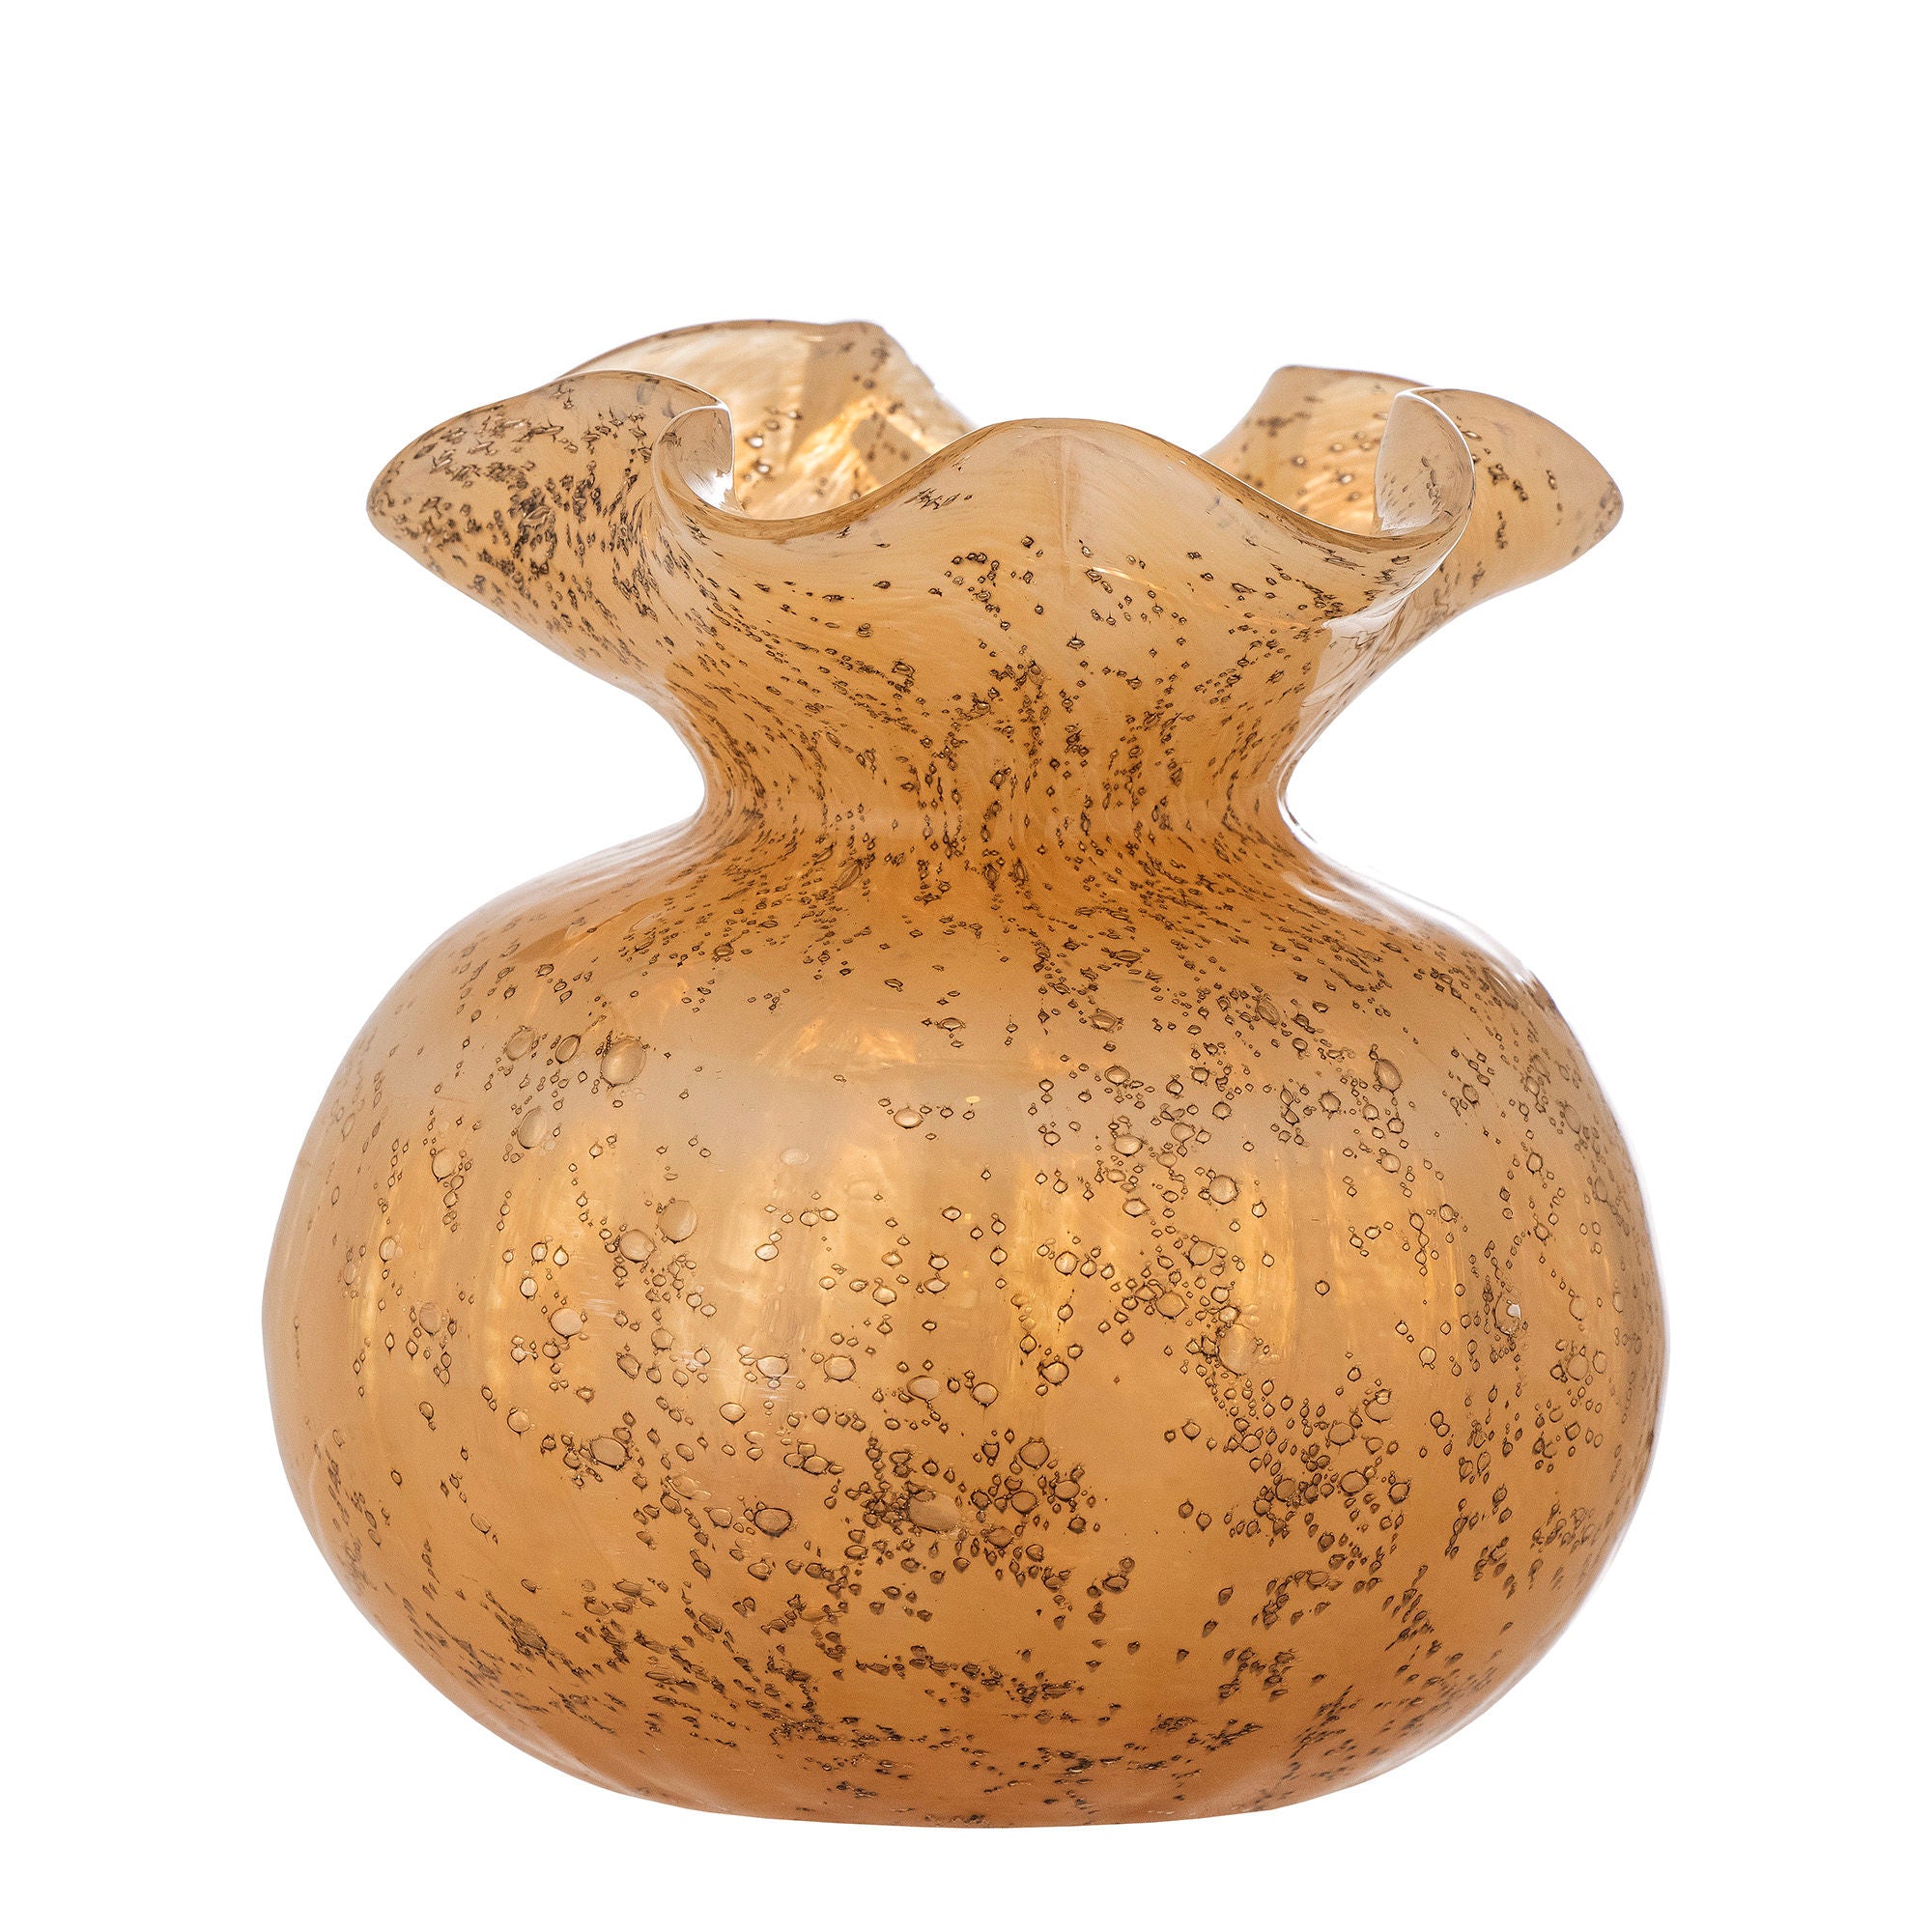 Die Thebe Vase von Creative Collection ist eine wunderschöne Glasvase in warmem Orange mit einem goldenen Schimmereffekt, perfekt für kleine Blumenarrangements und eine elegante Note in jedem Raum.